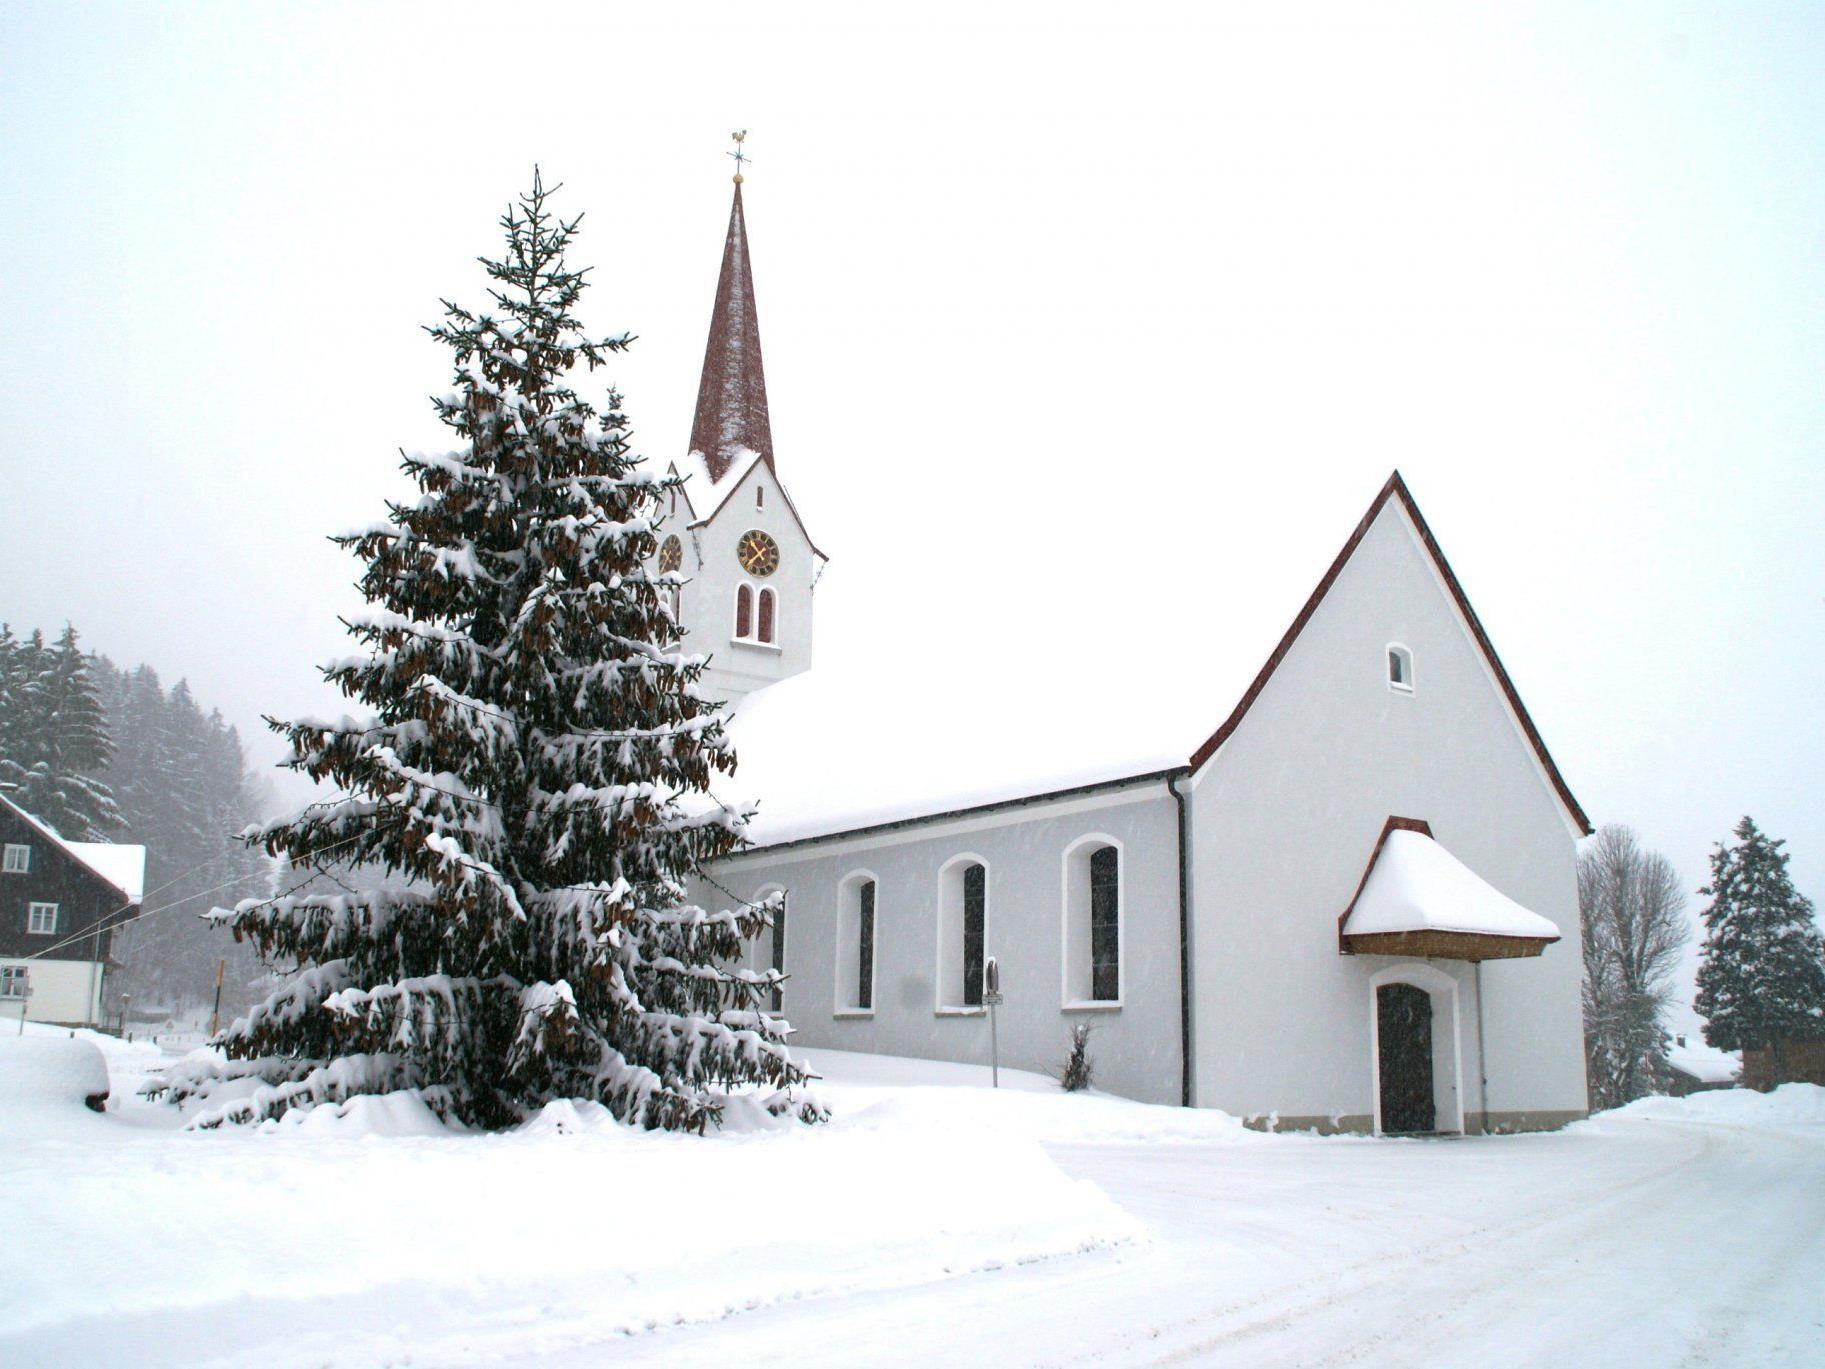 Ein Christbaum mit vielen Tannenzapfen vor der tief verschneiten Pfarrkirche in Sibratsgfäll lässt Weihnachtsstimmung aufkommen.